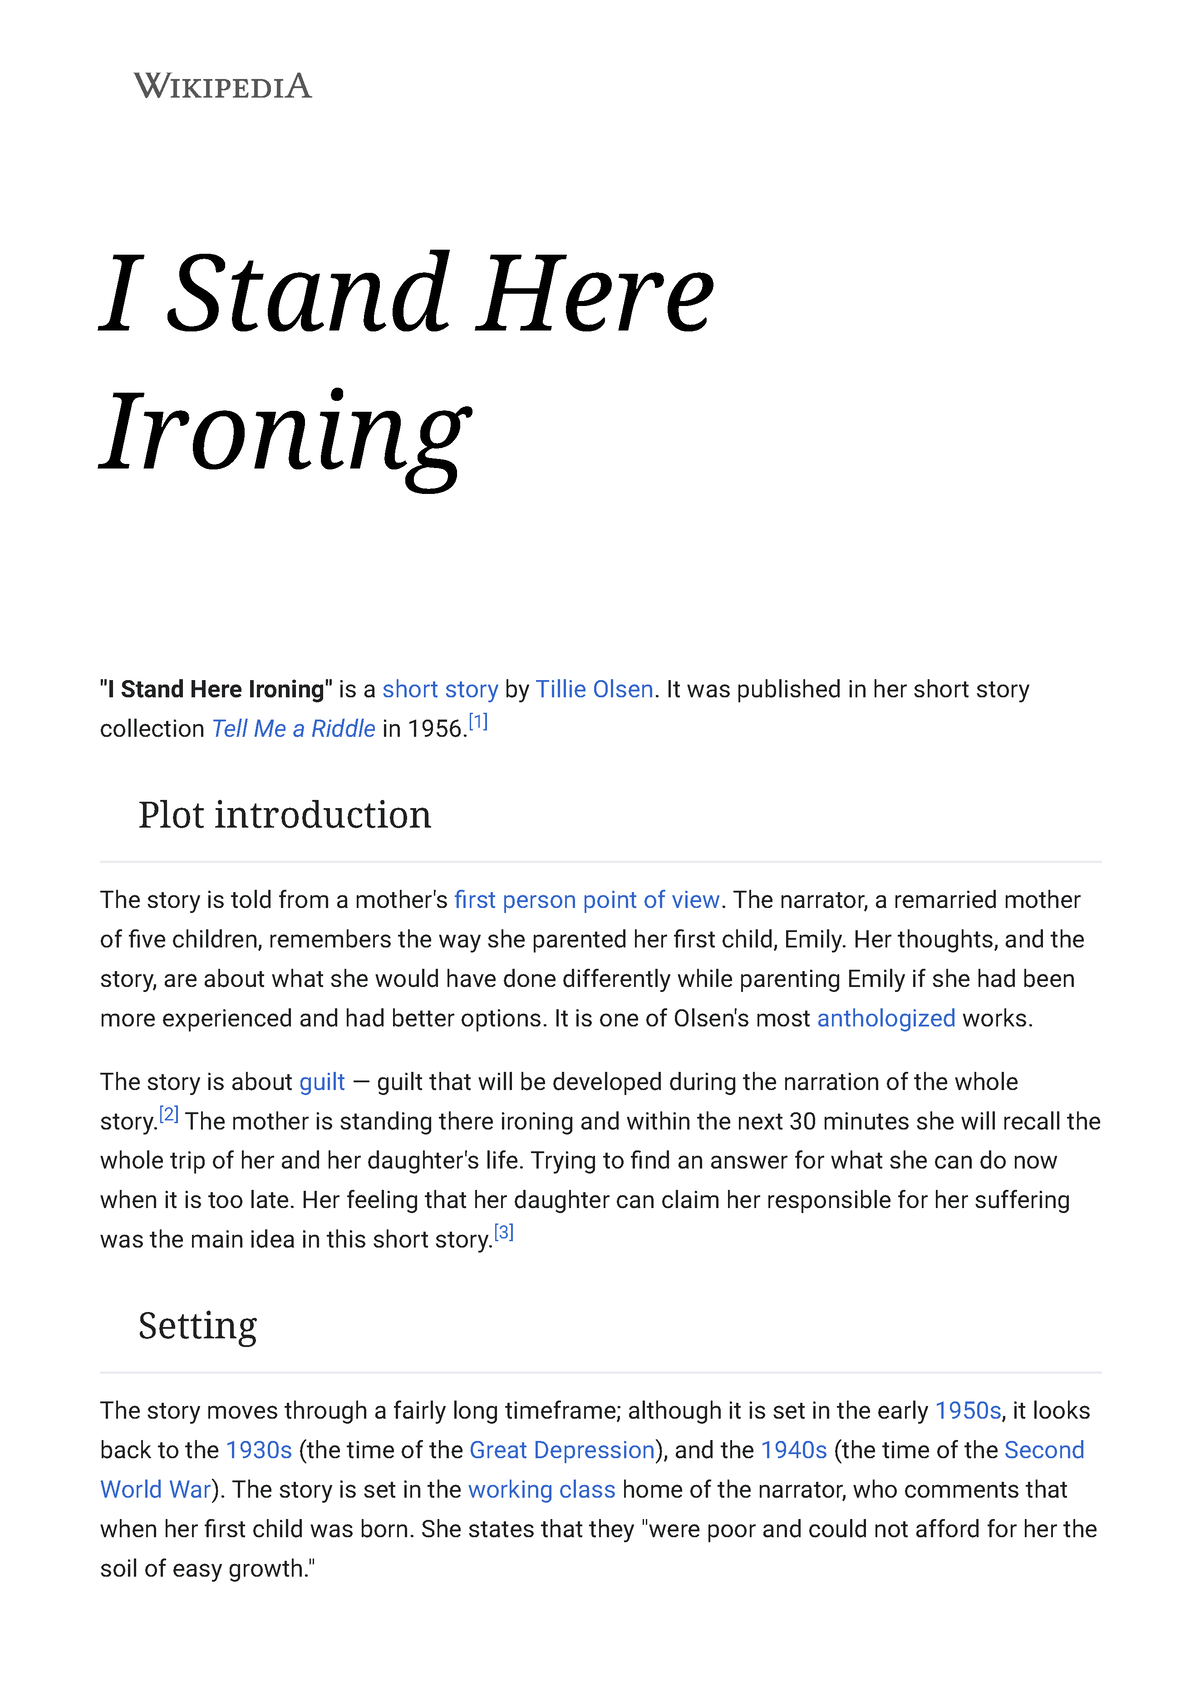 Ironing - Wikipedia